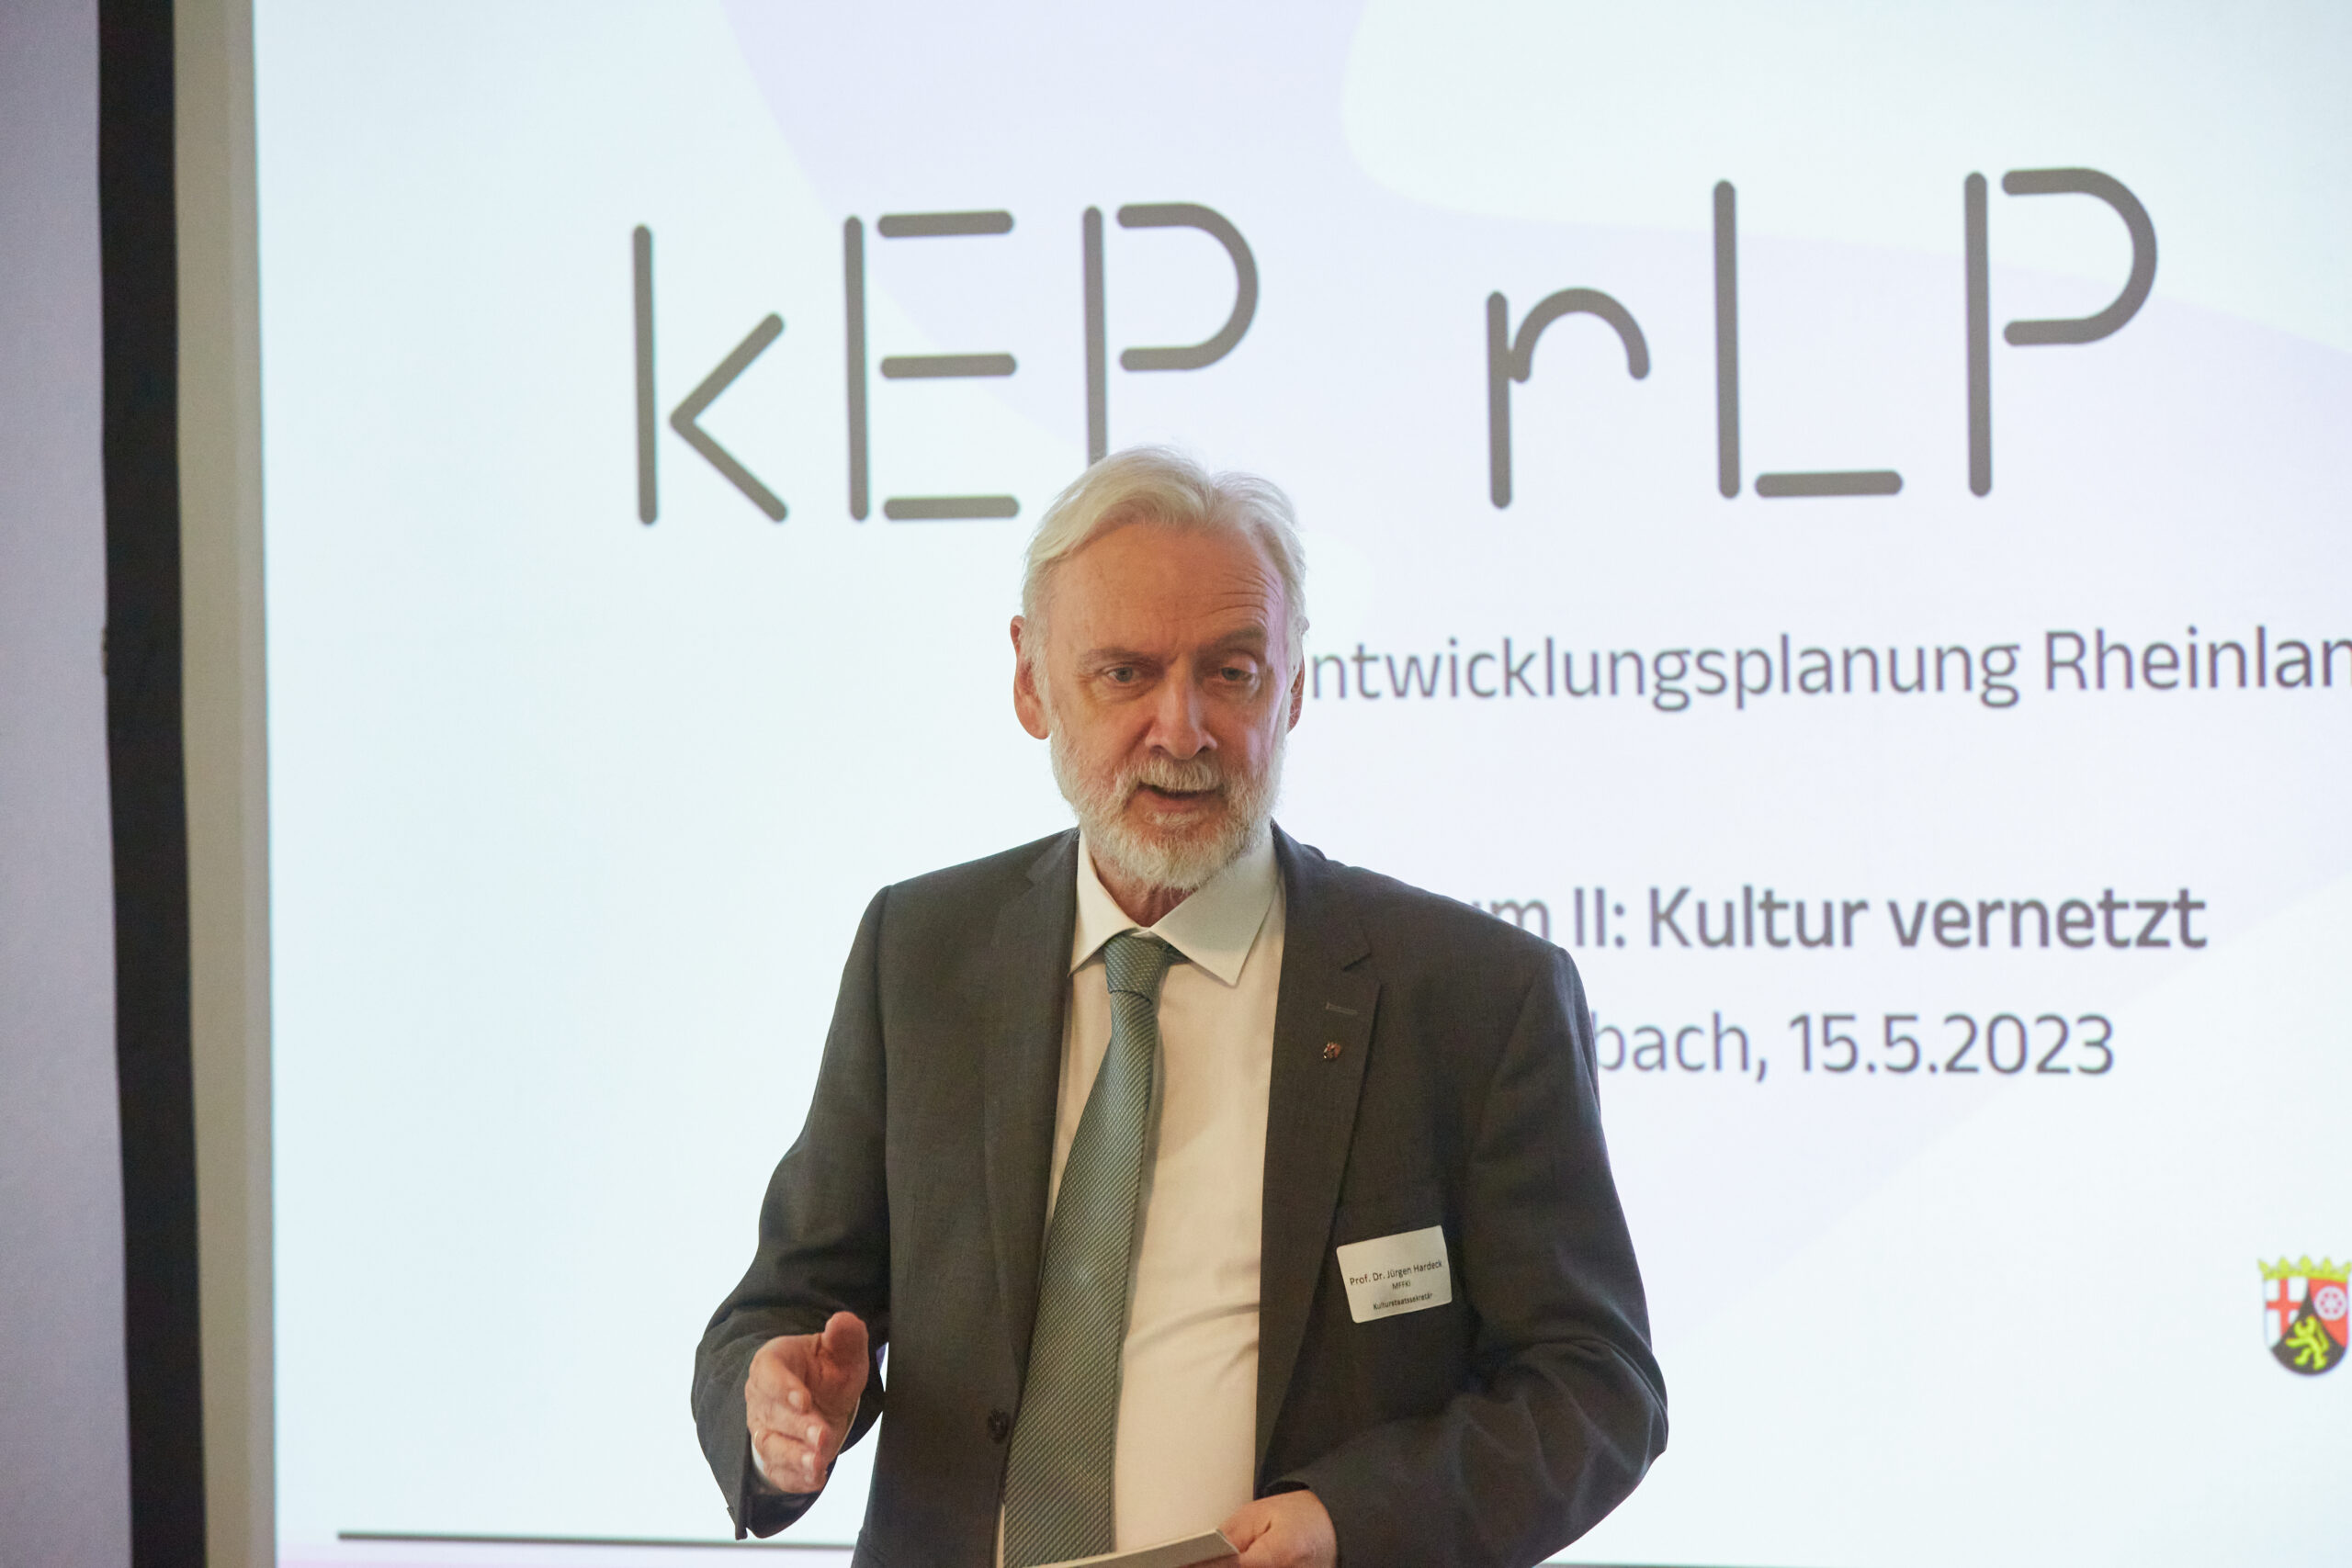 Staatssekretär Prof. Dr. Jürgen Hardeck begrüßt die Teilnehmenden des zweiten Themenforums der Kulturentwicklungsplanung